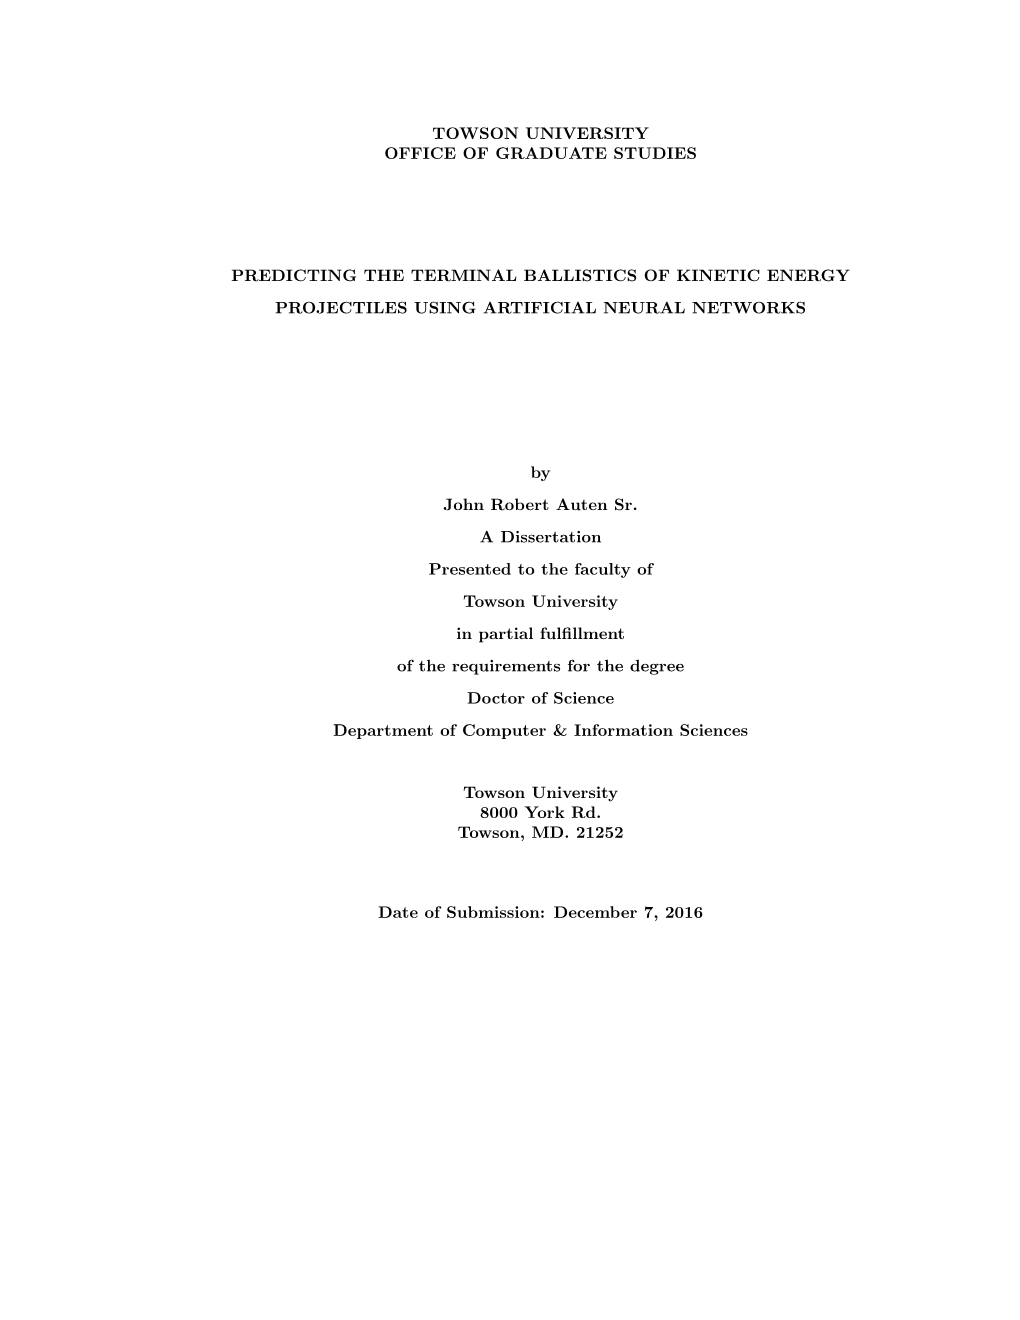 Auten Dissertation (13.86Mb)